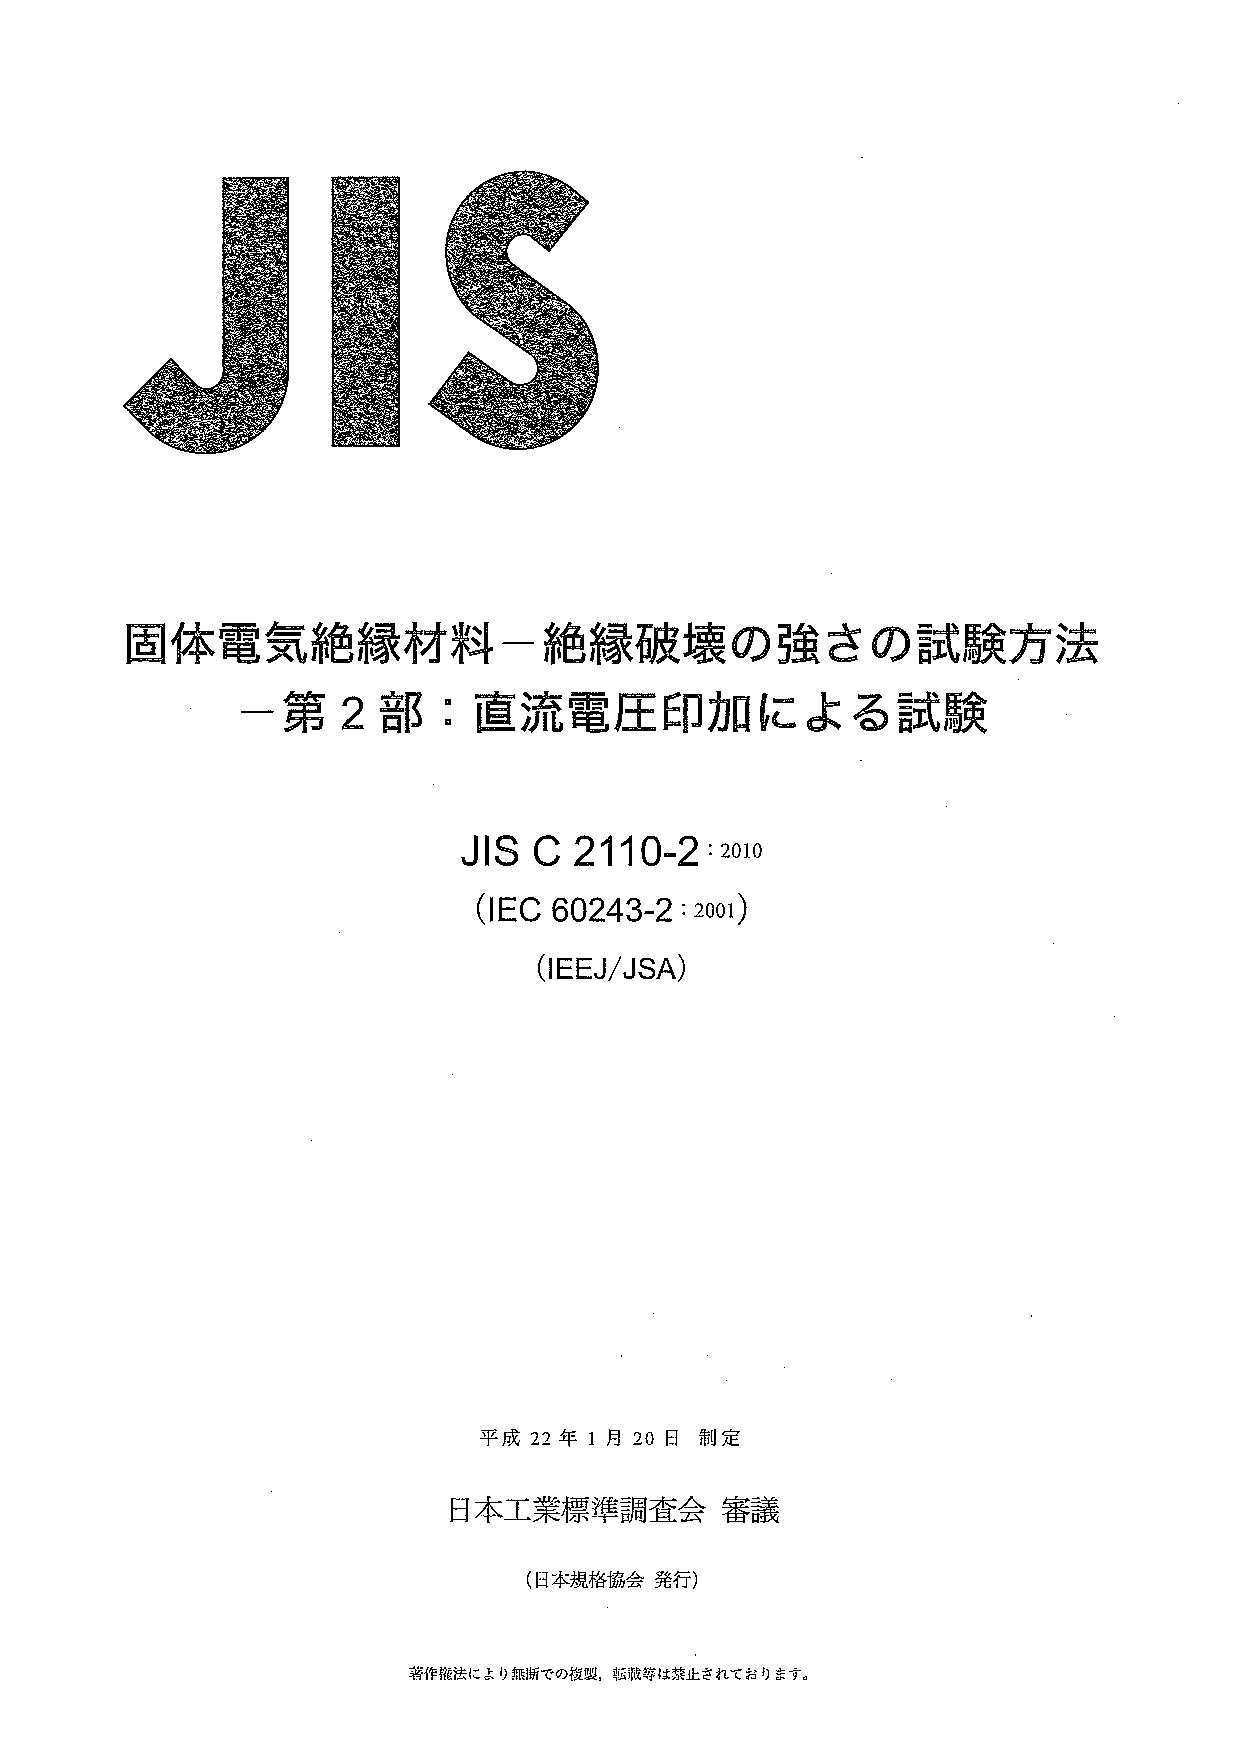 JIS C 2110-2:2010封面图